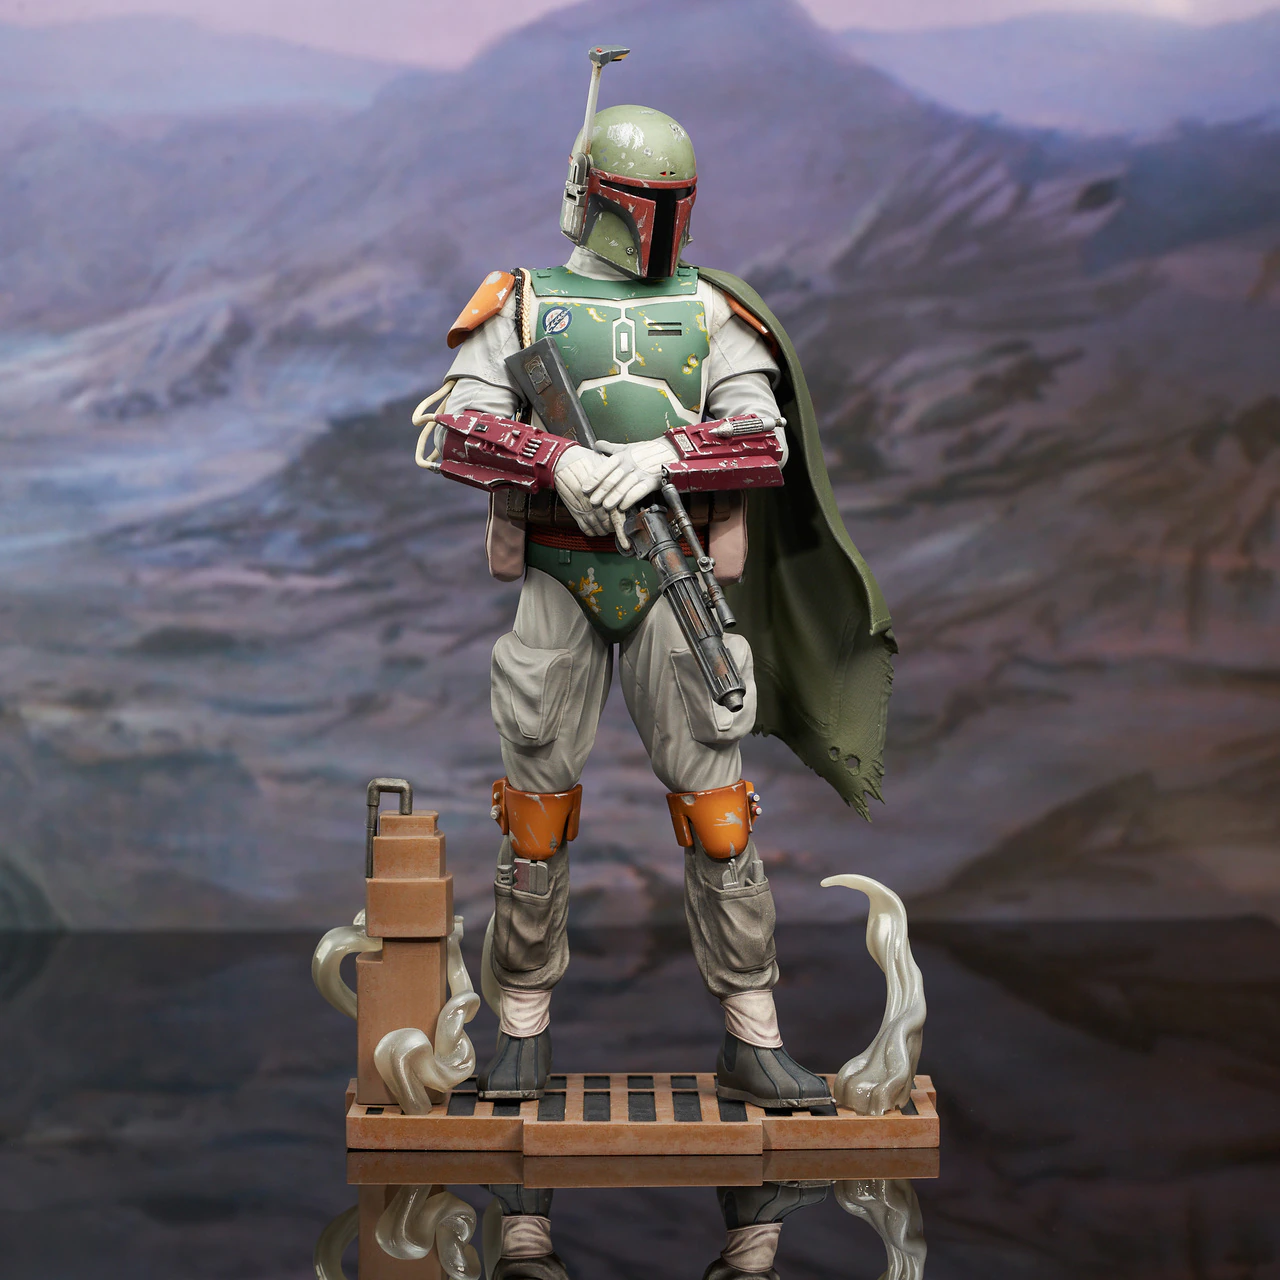 Gentle Giant Star Wars Boba Fett Milestones RotJ Statue